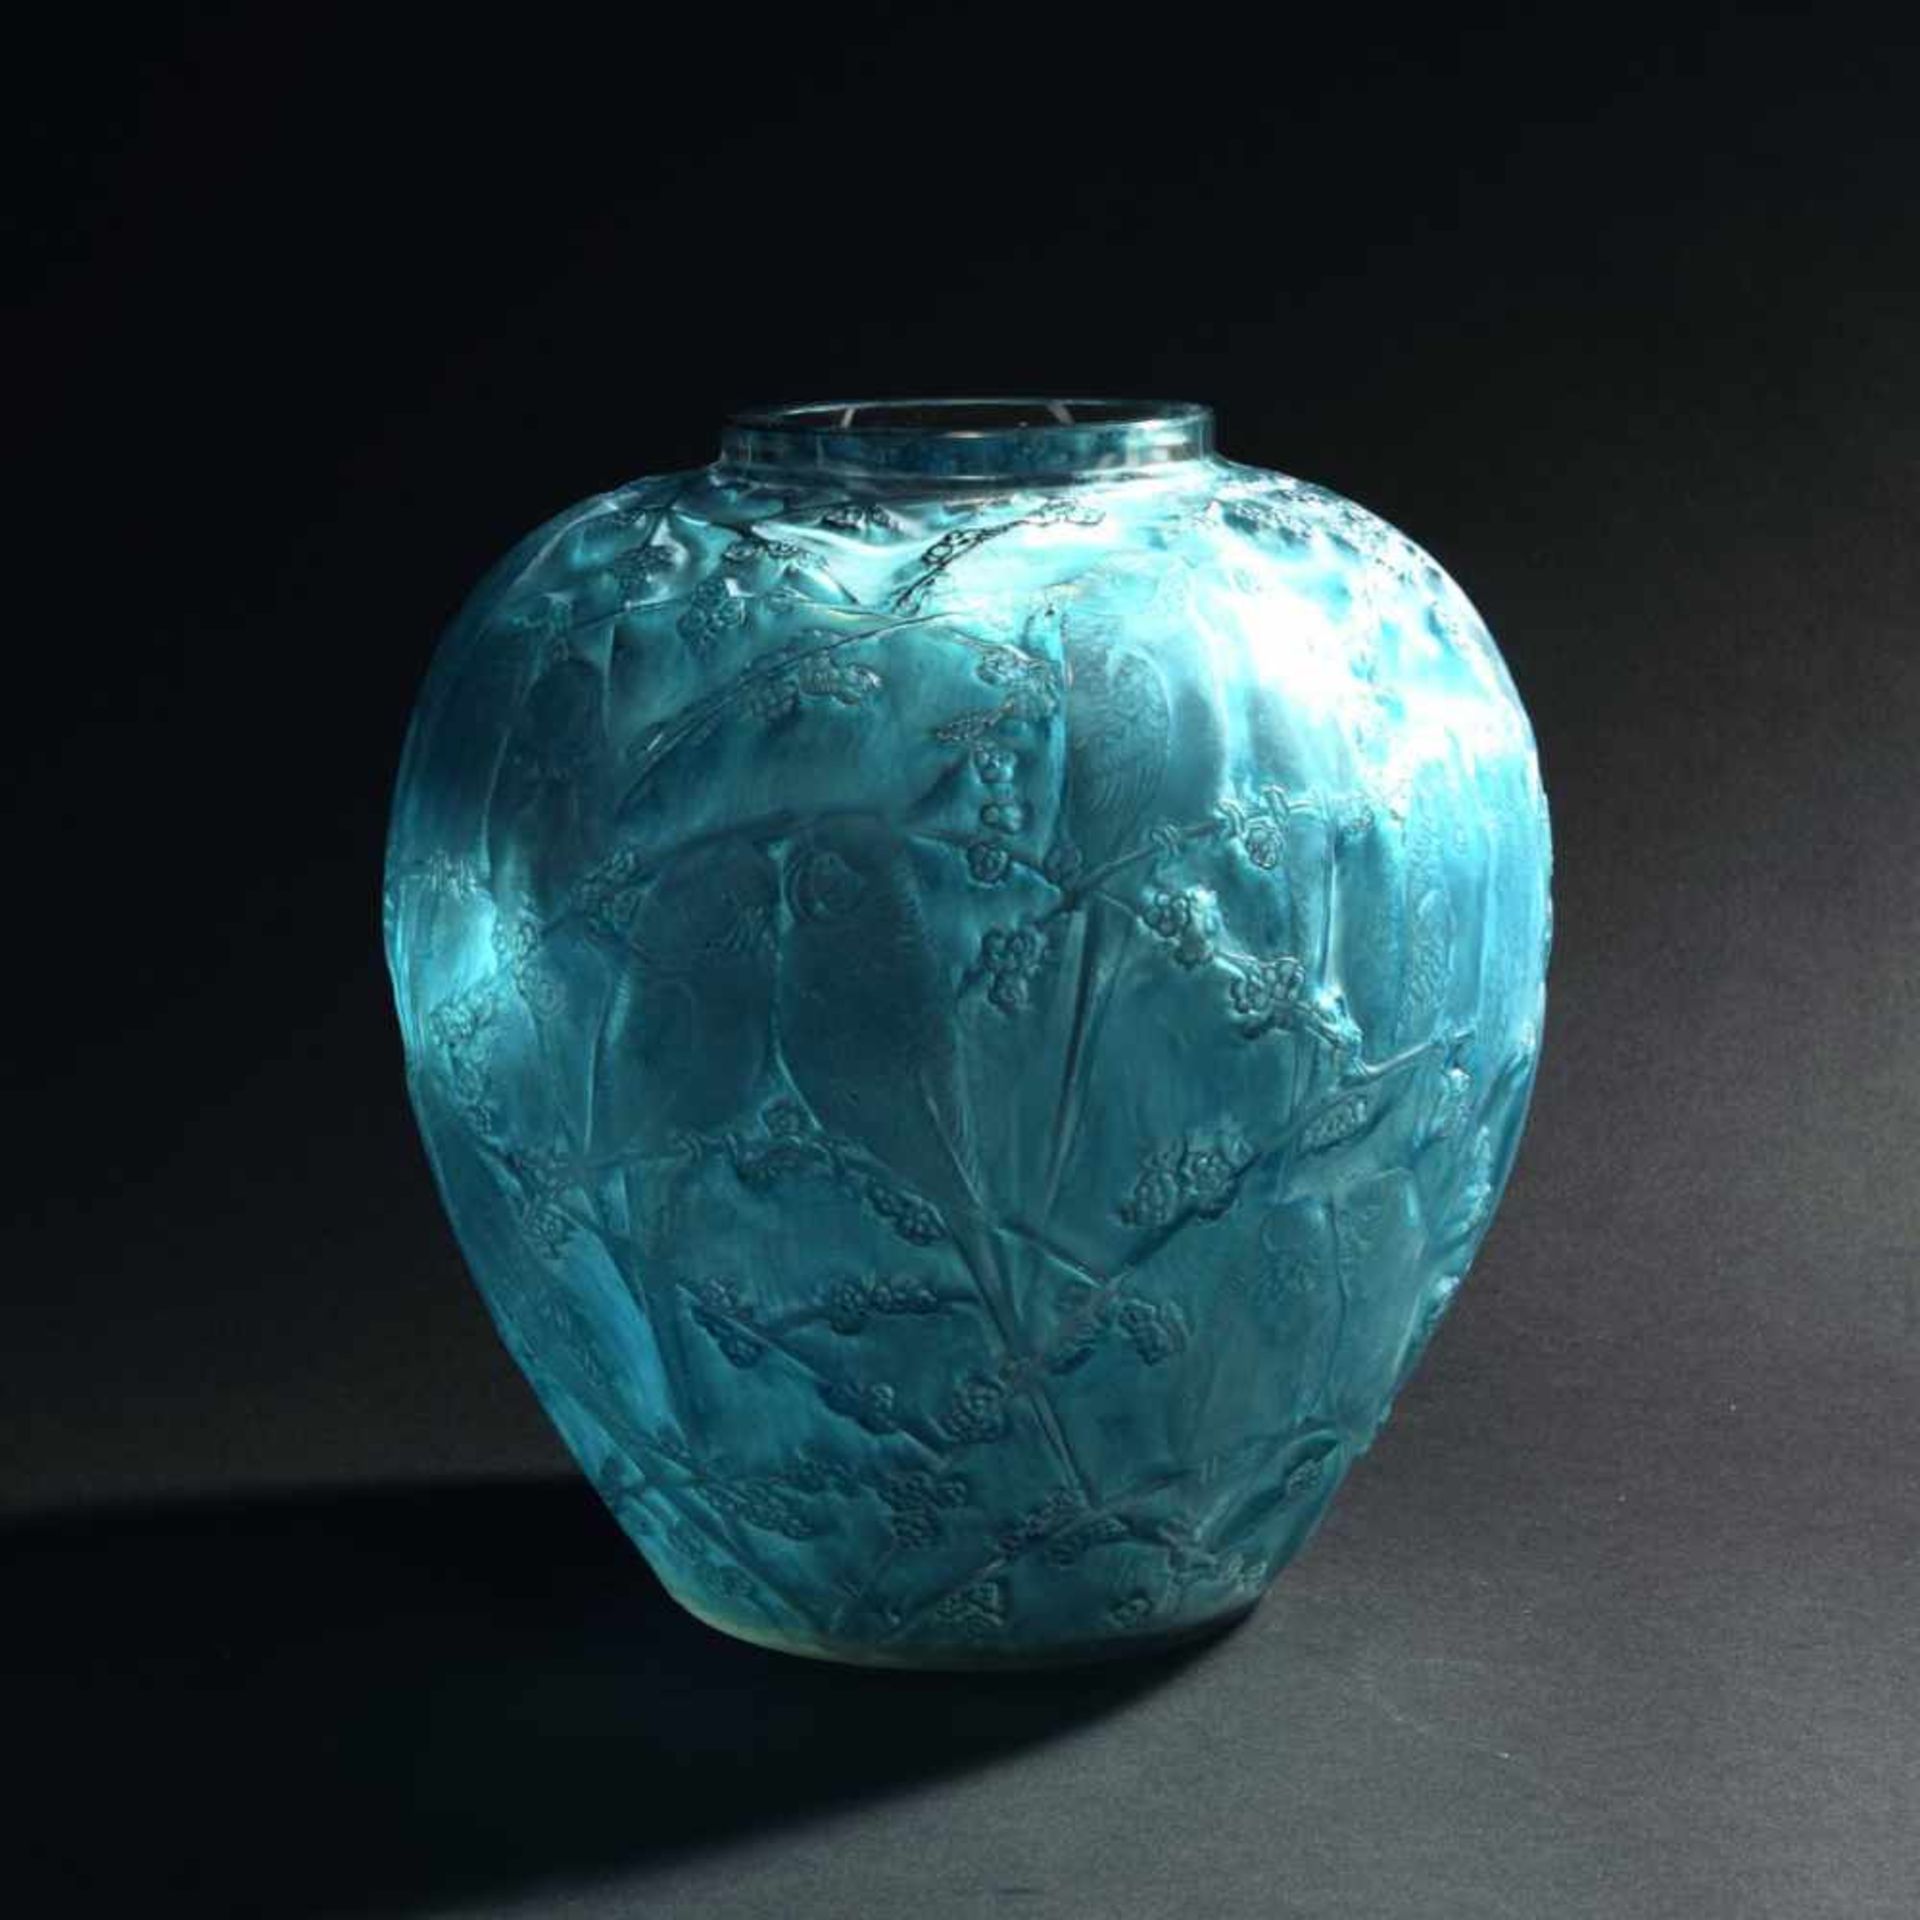 René Lalique, 'Perruches' vase, 1919'Perruches' vase, 1919H. 25 cm. Clear mould-blown glass, blue